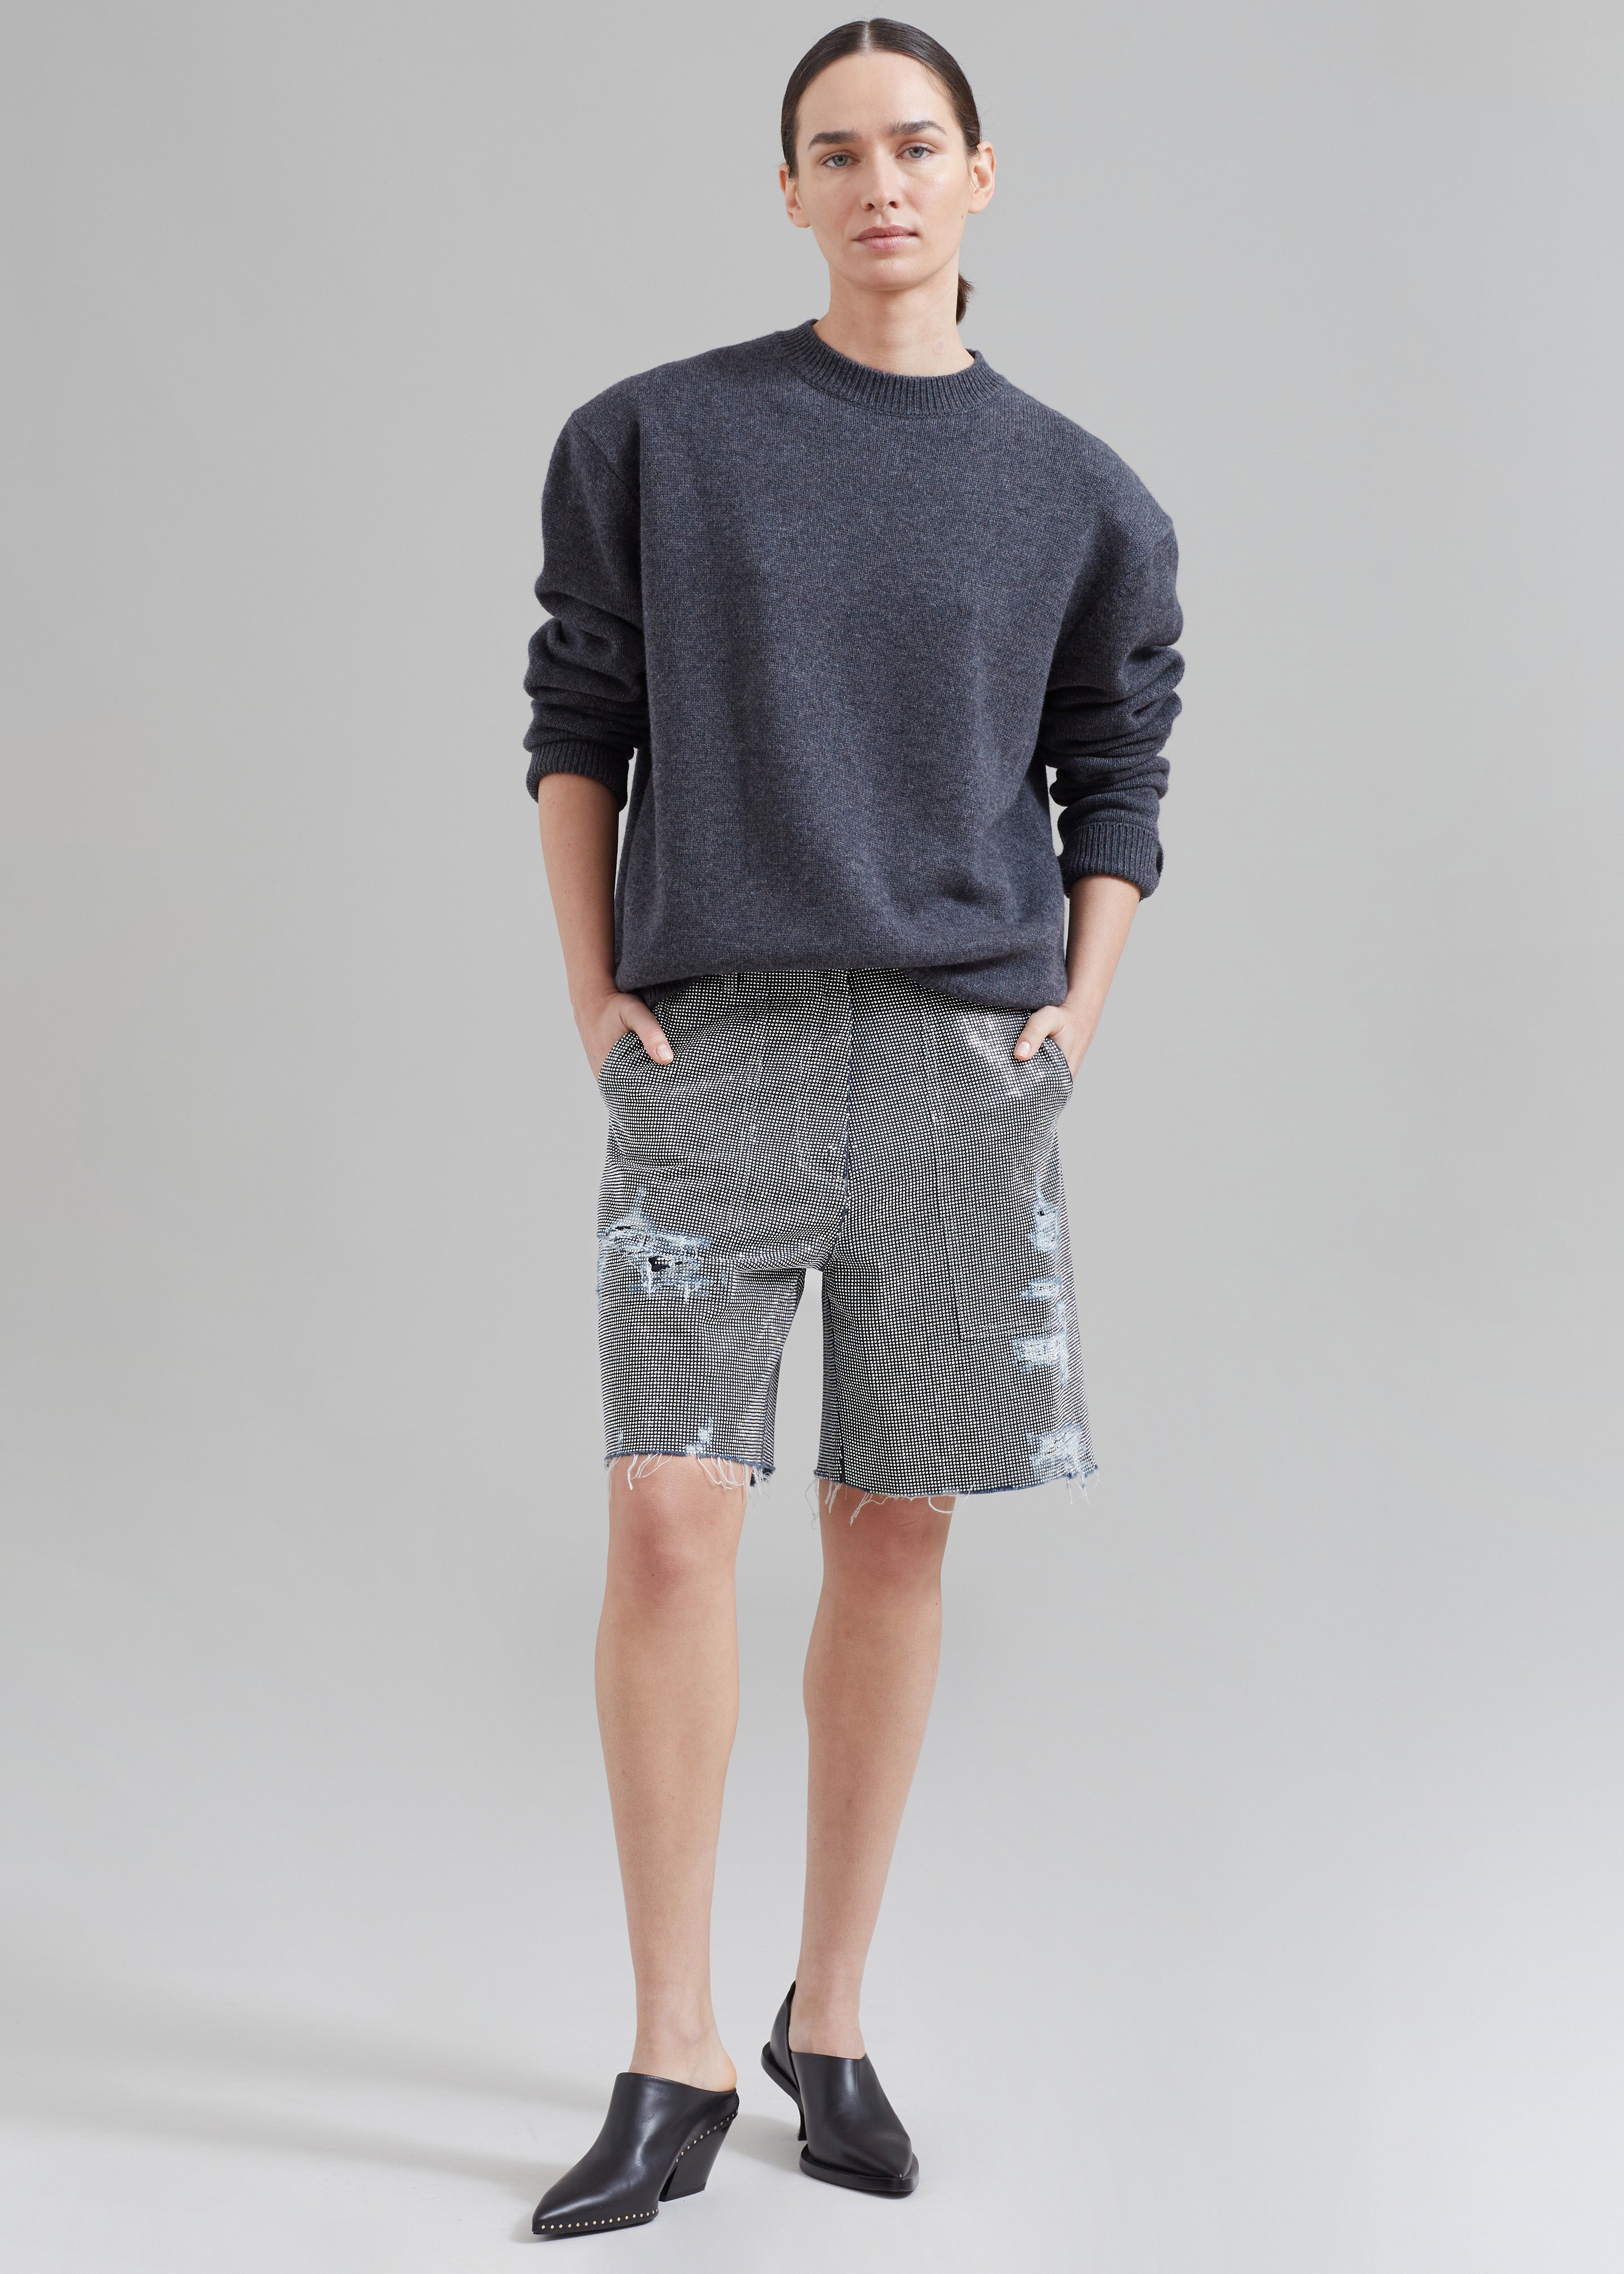 JW Anderson Studded Workwear Shorts - Indigo/Silver - 1